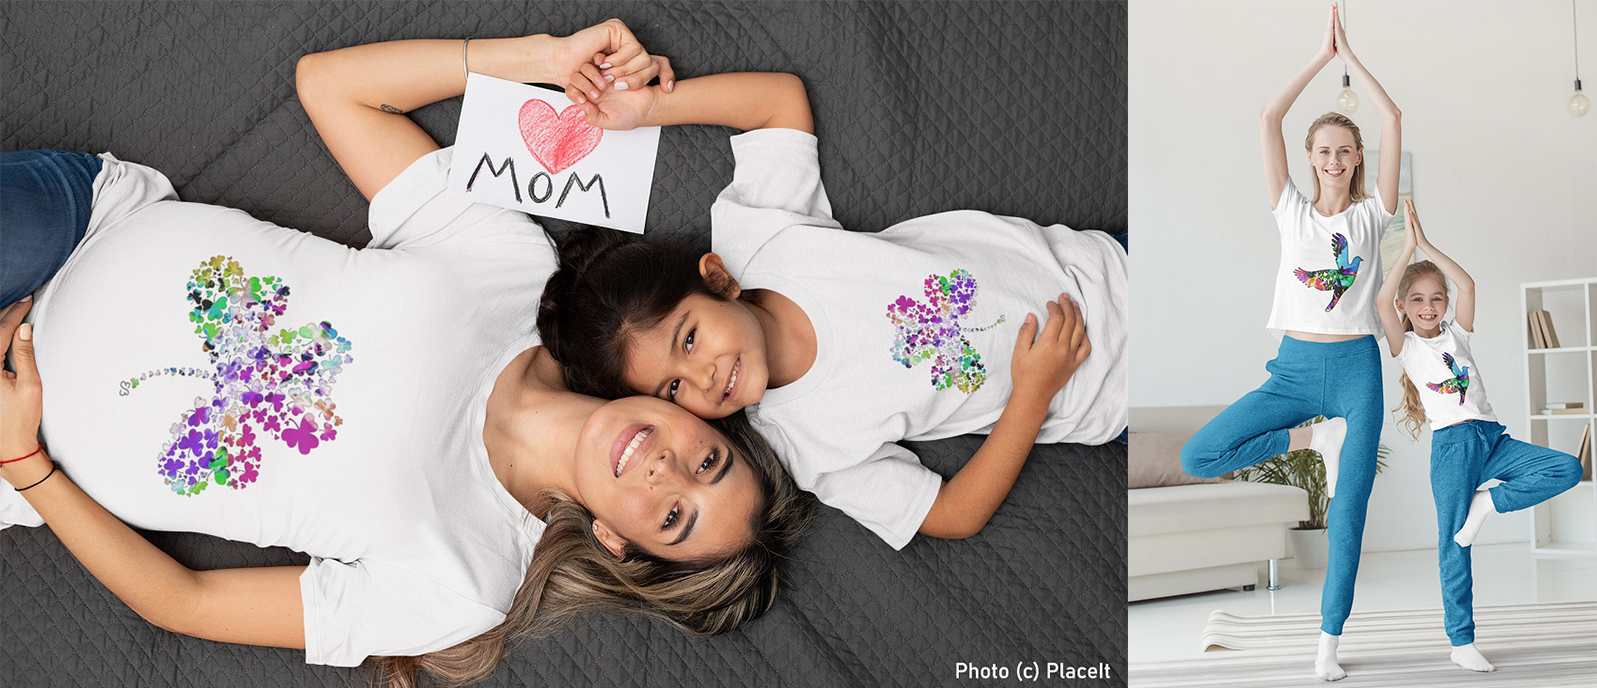 Modèles de t-shirts assortis pour maman et fillette signés Eliora Bousquet